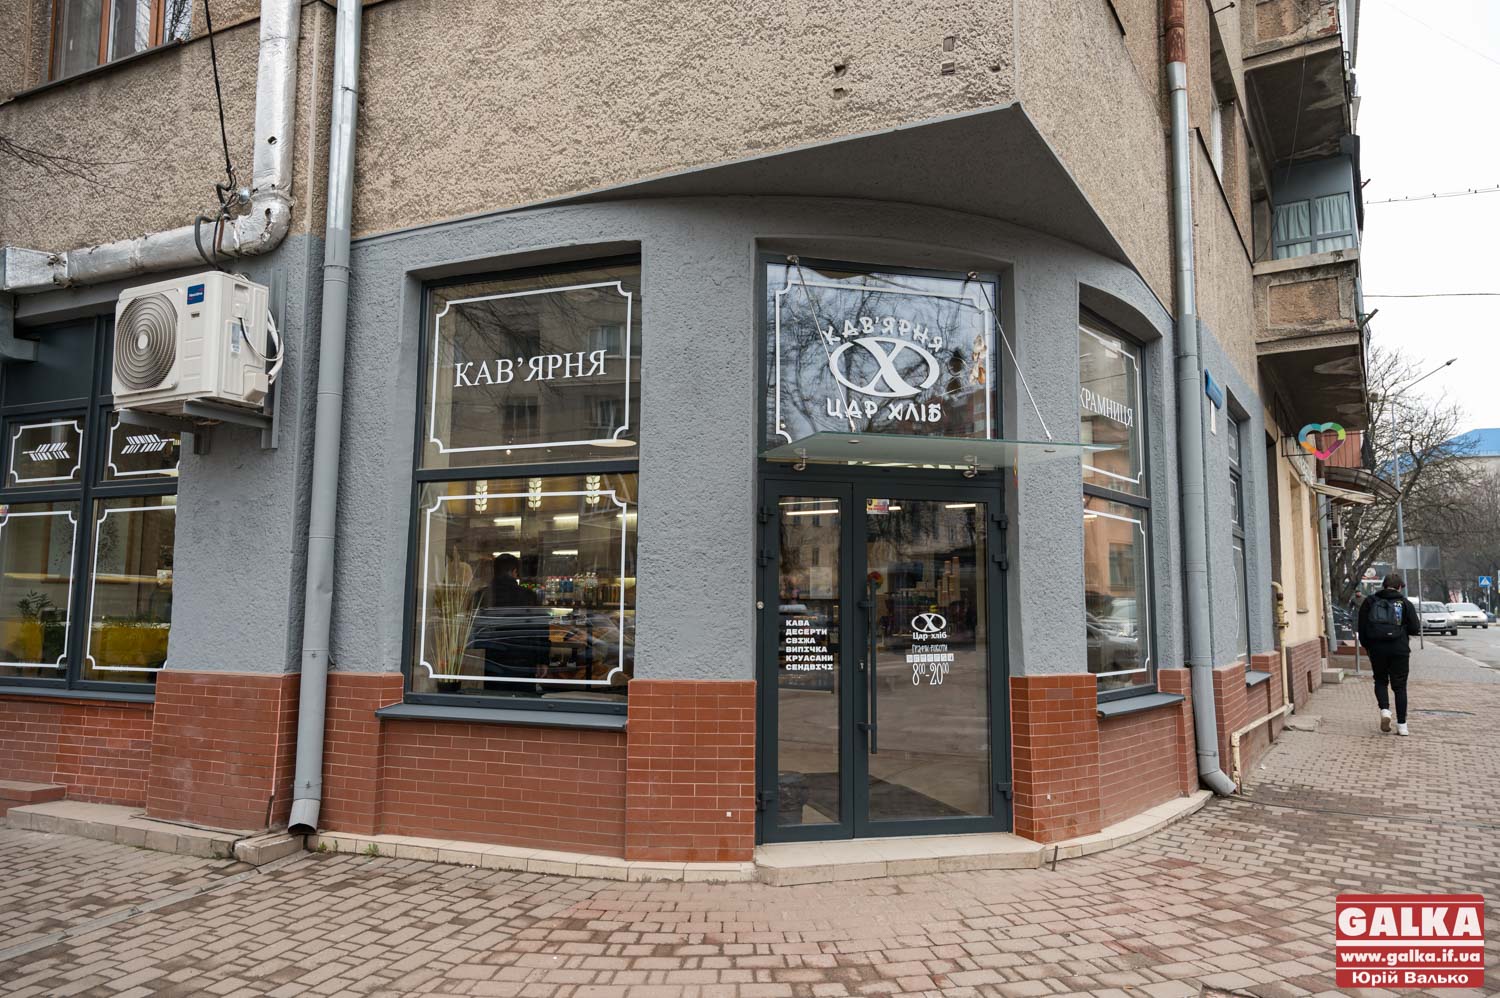 І купити хліба, і випити кави: оновлена крамниця-кавʼярня “Цар Хліб” в Івано-Франківську (ФОТО)